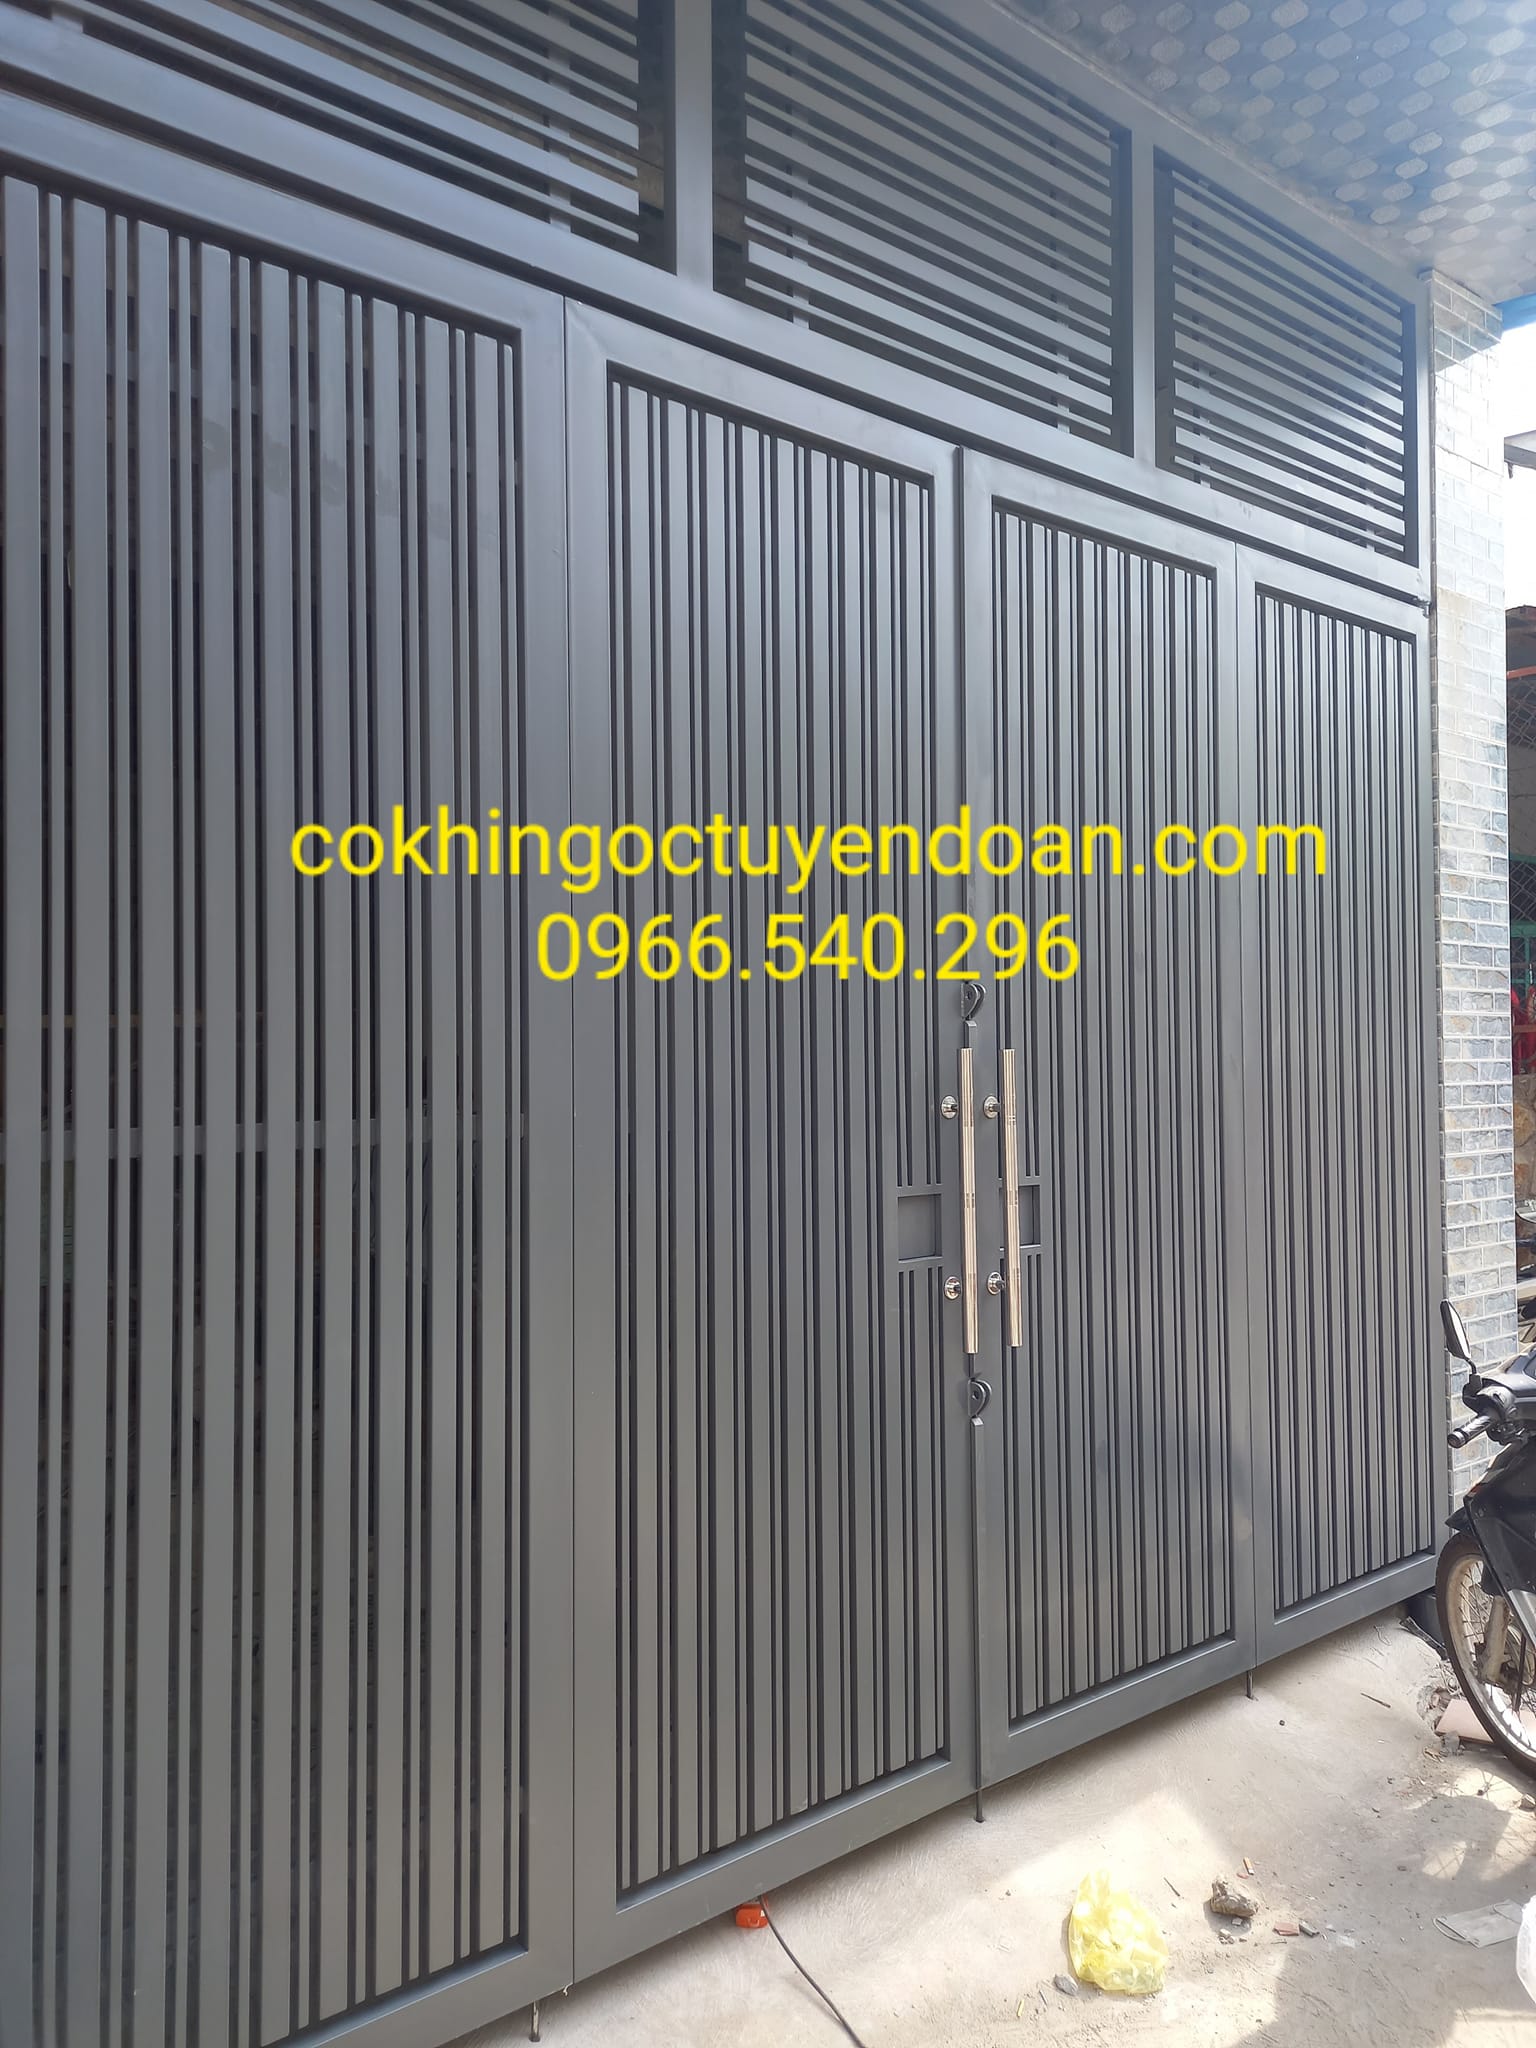 Thợ làm cửa sắt tại Hóc Môn TPHCM - Làm cửa sắt 4 cánh | 0966540296